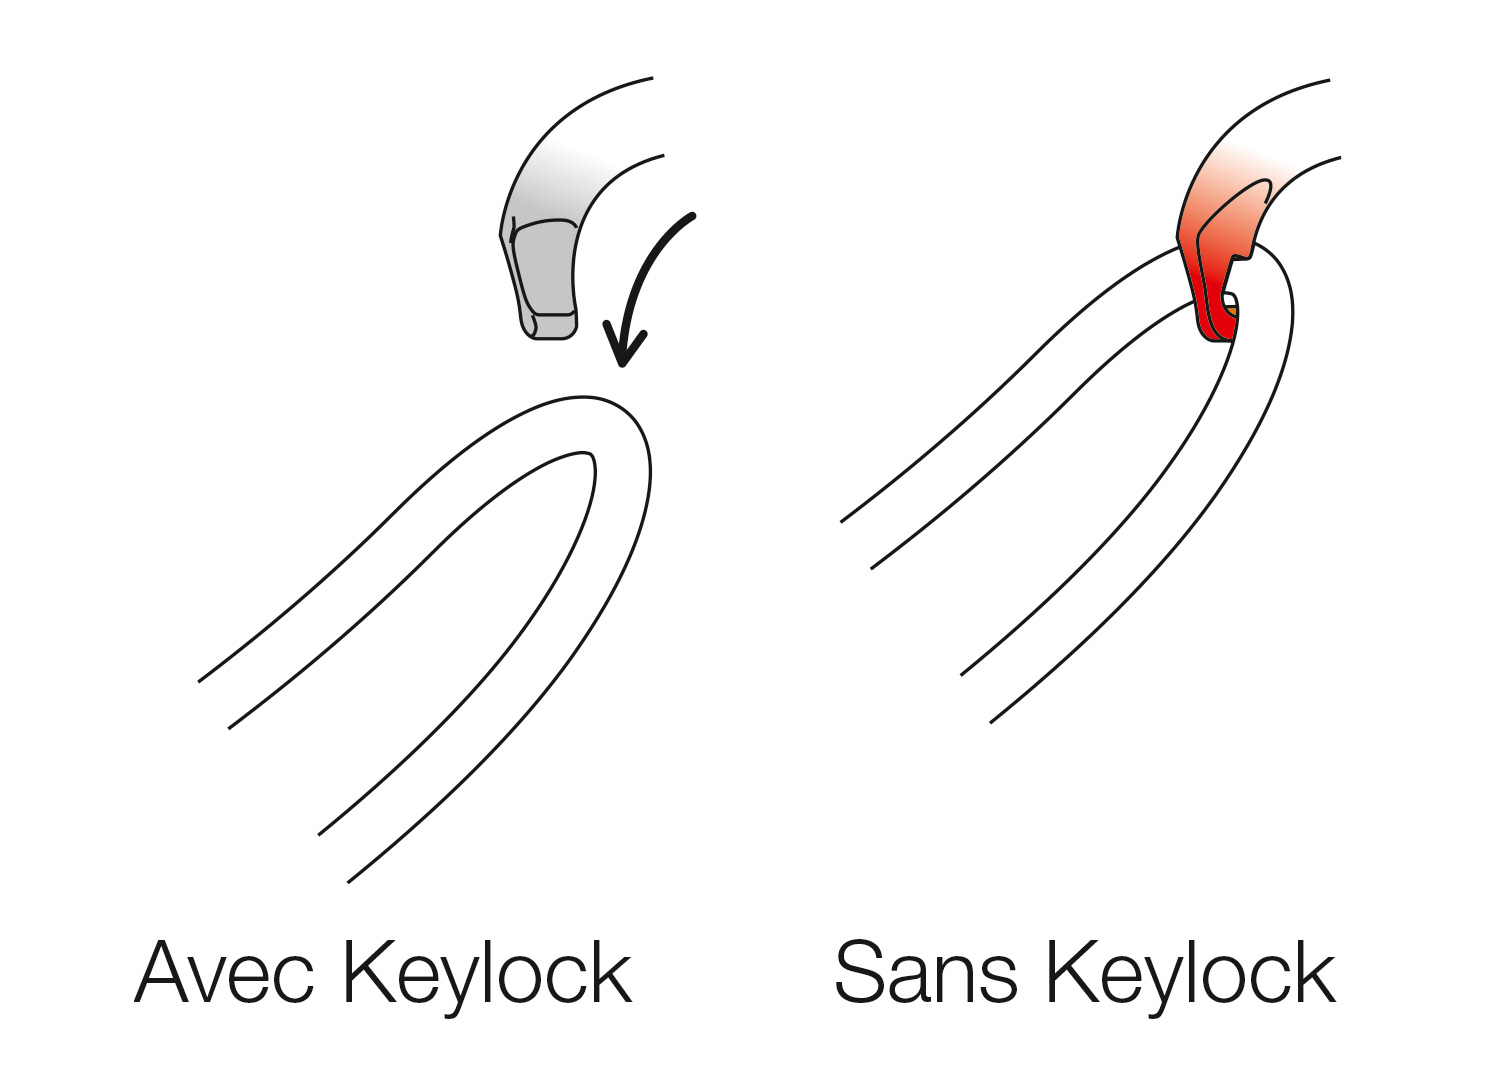 Sistema Keylock